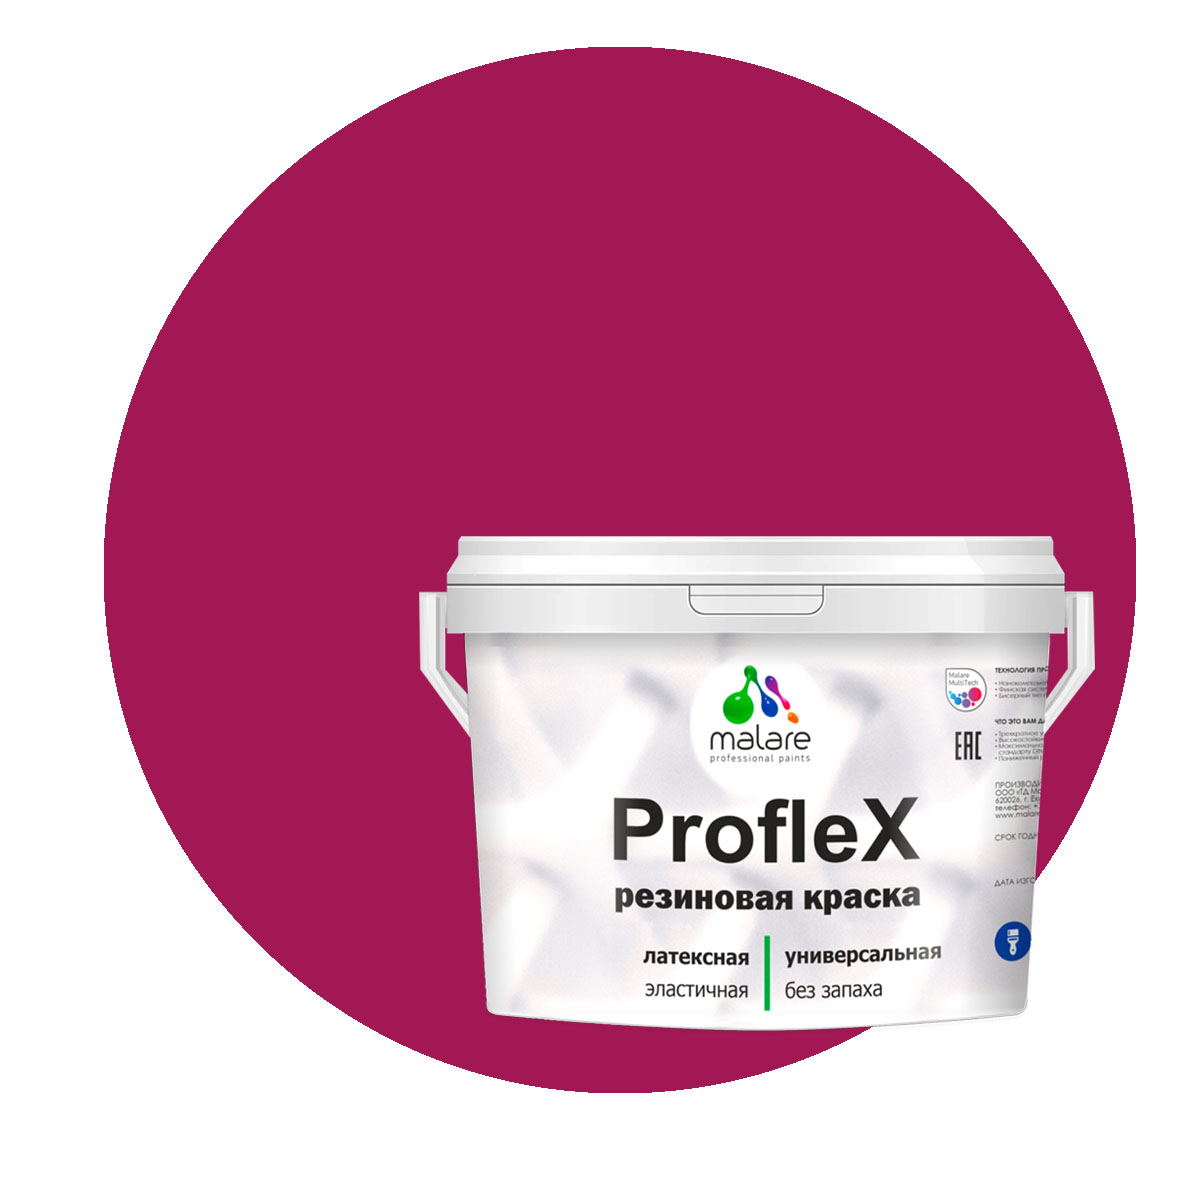 Краска Malare ProfleX для фасадов, интерьера, мебели, амарантово-пурпурный, 1 кг.